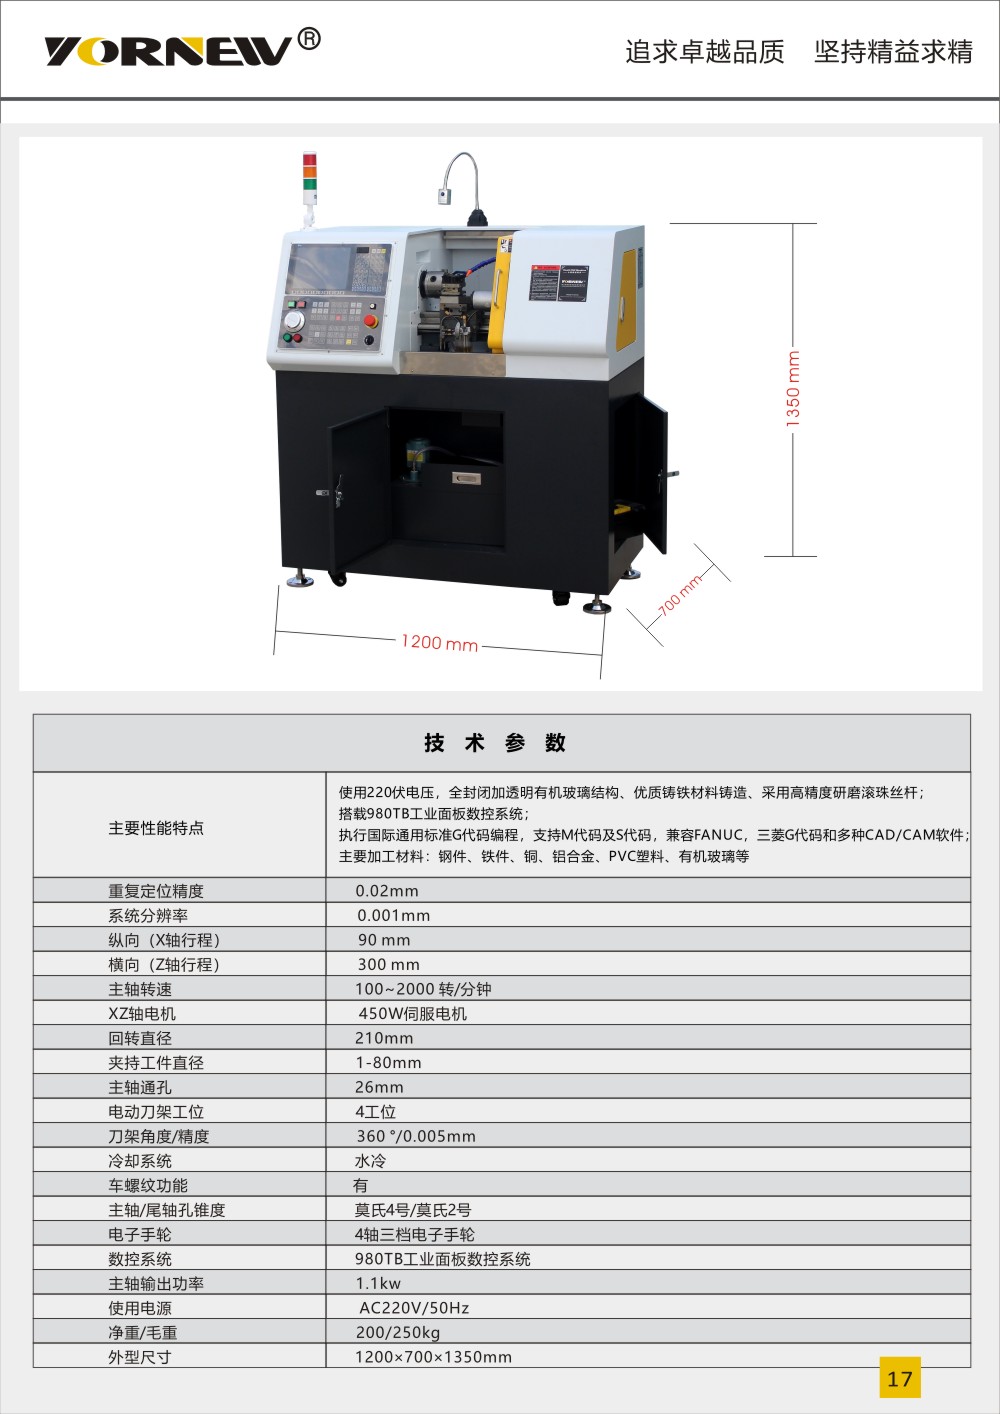 CK210sp小型数控车床产品彩页